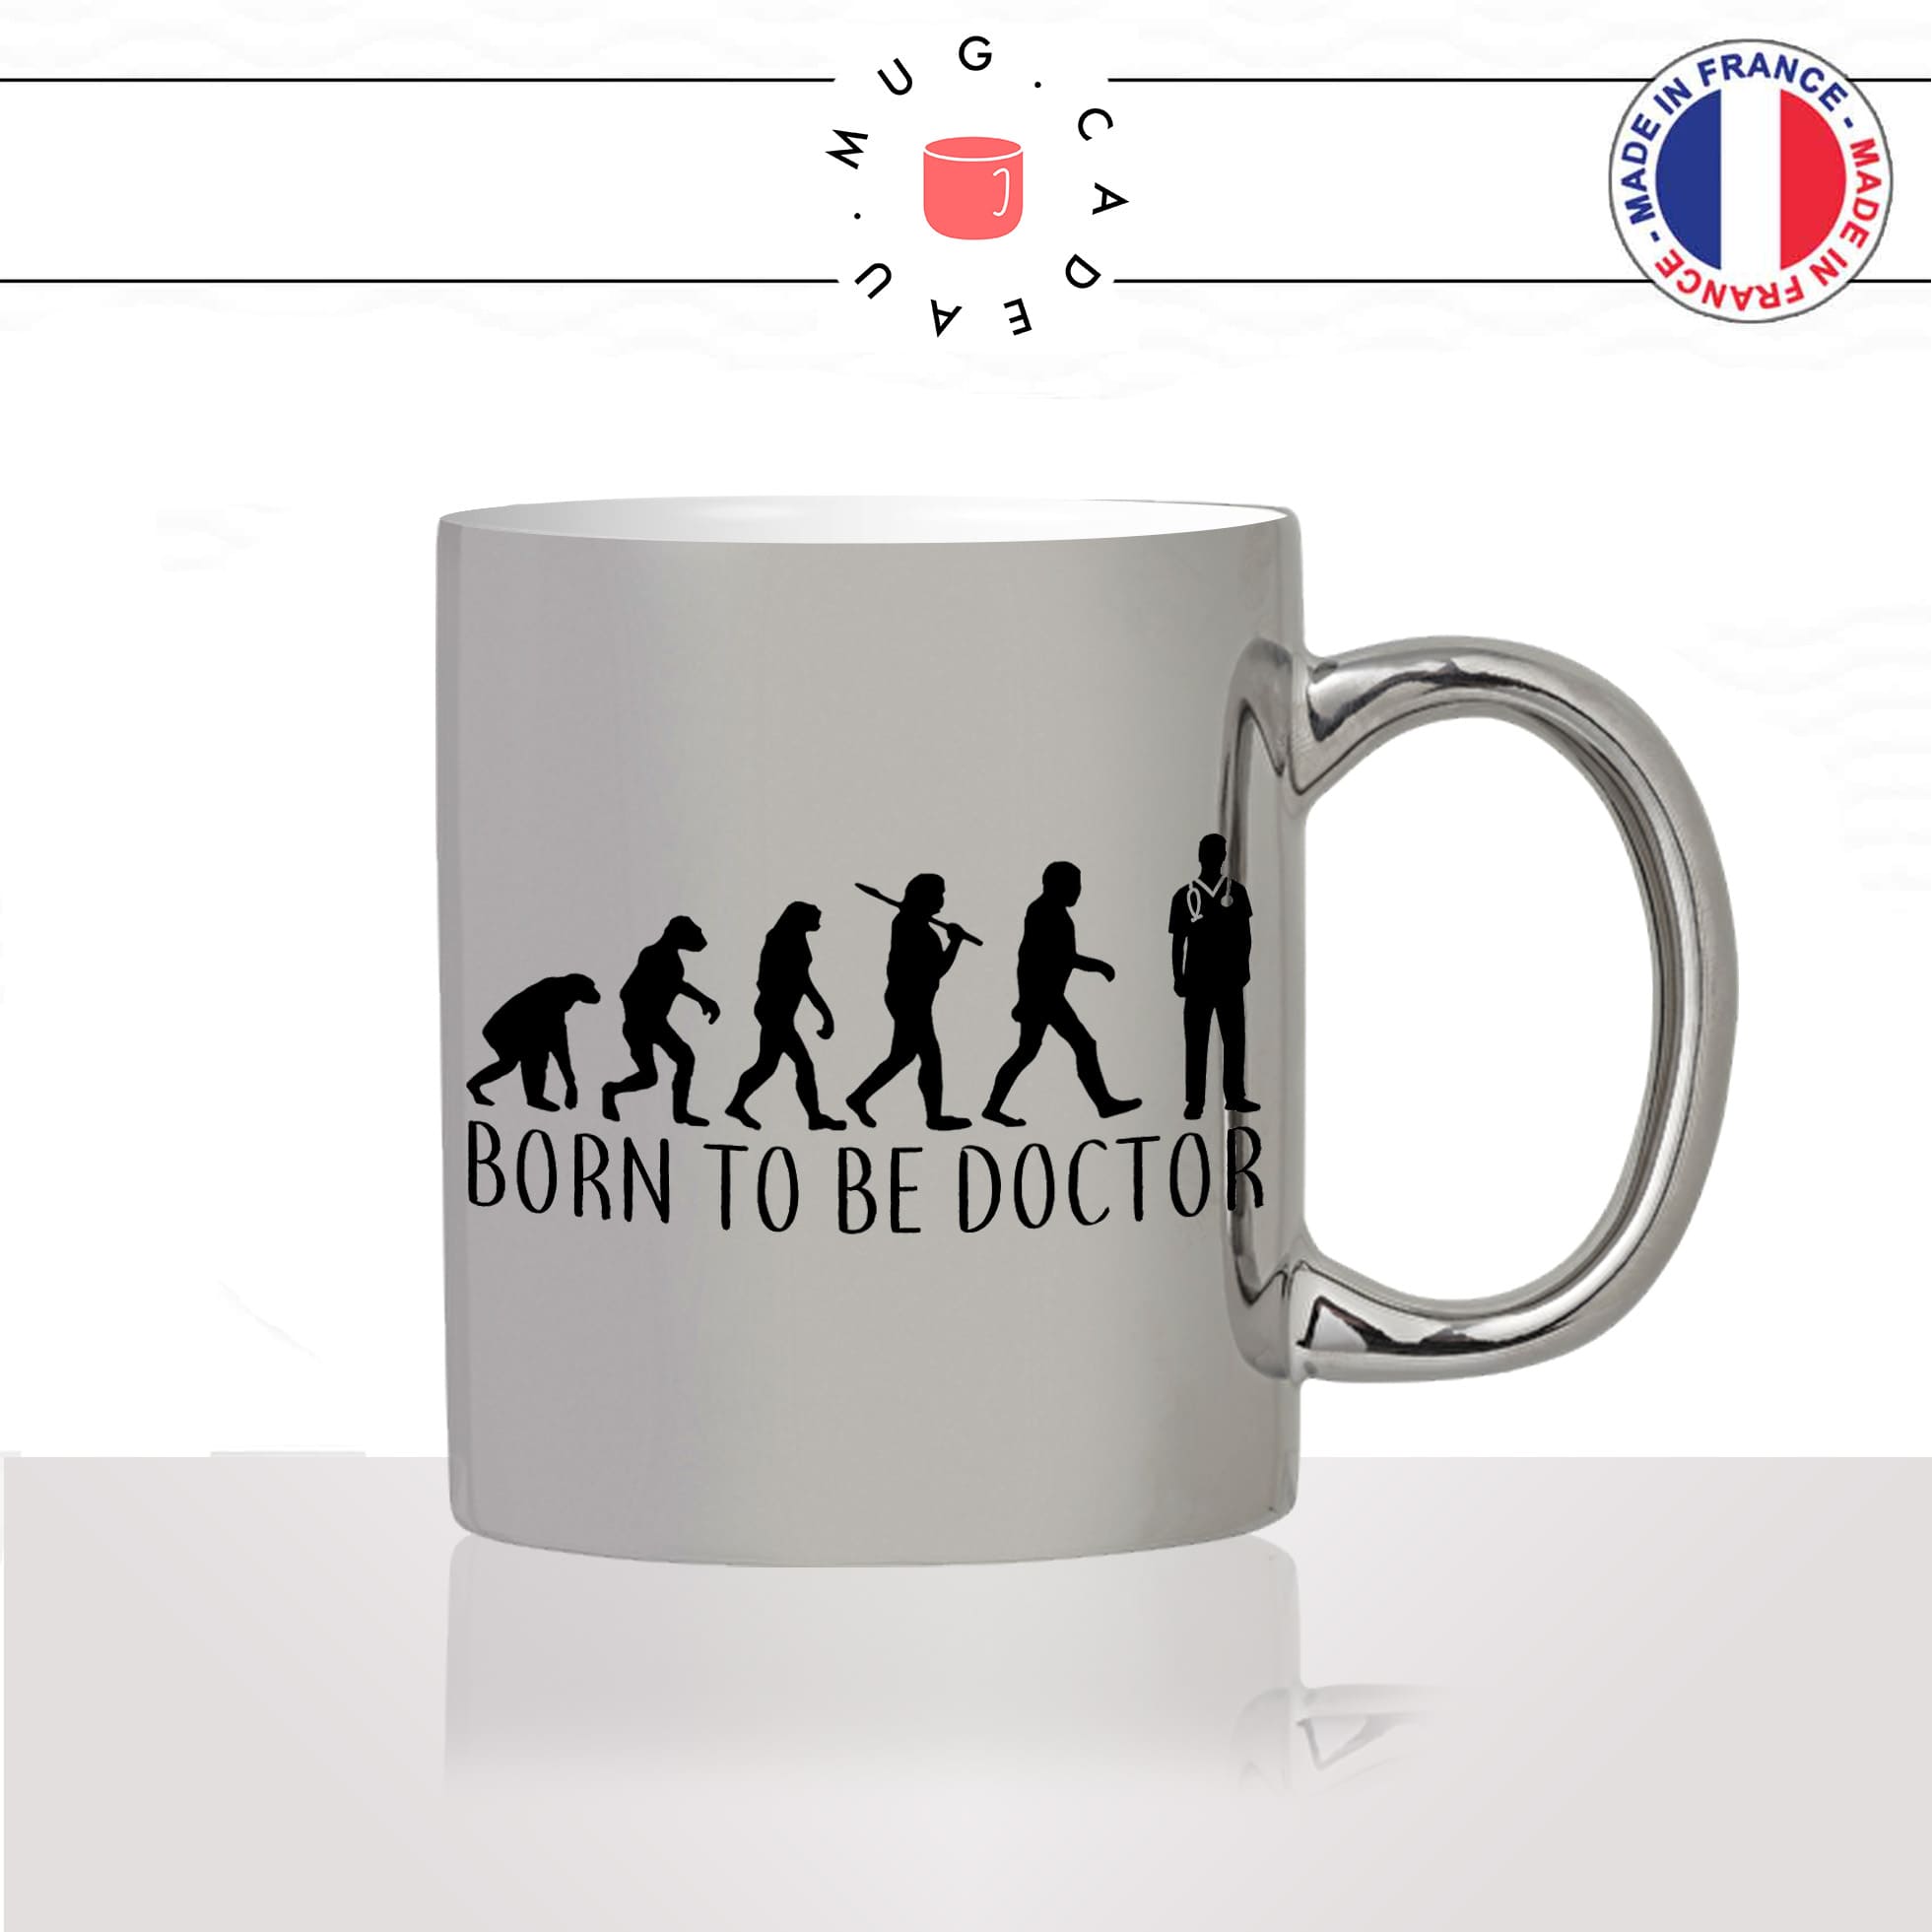 mug-tasse-argenté-argent-gris-silver-born-to-be-doctor-docteur-evolution-humaine-homme-femme-humour-fun-cool-idée-cadeau-original2